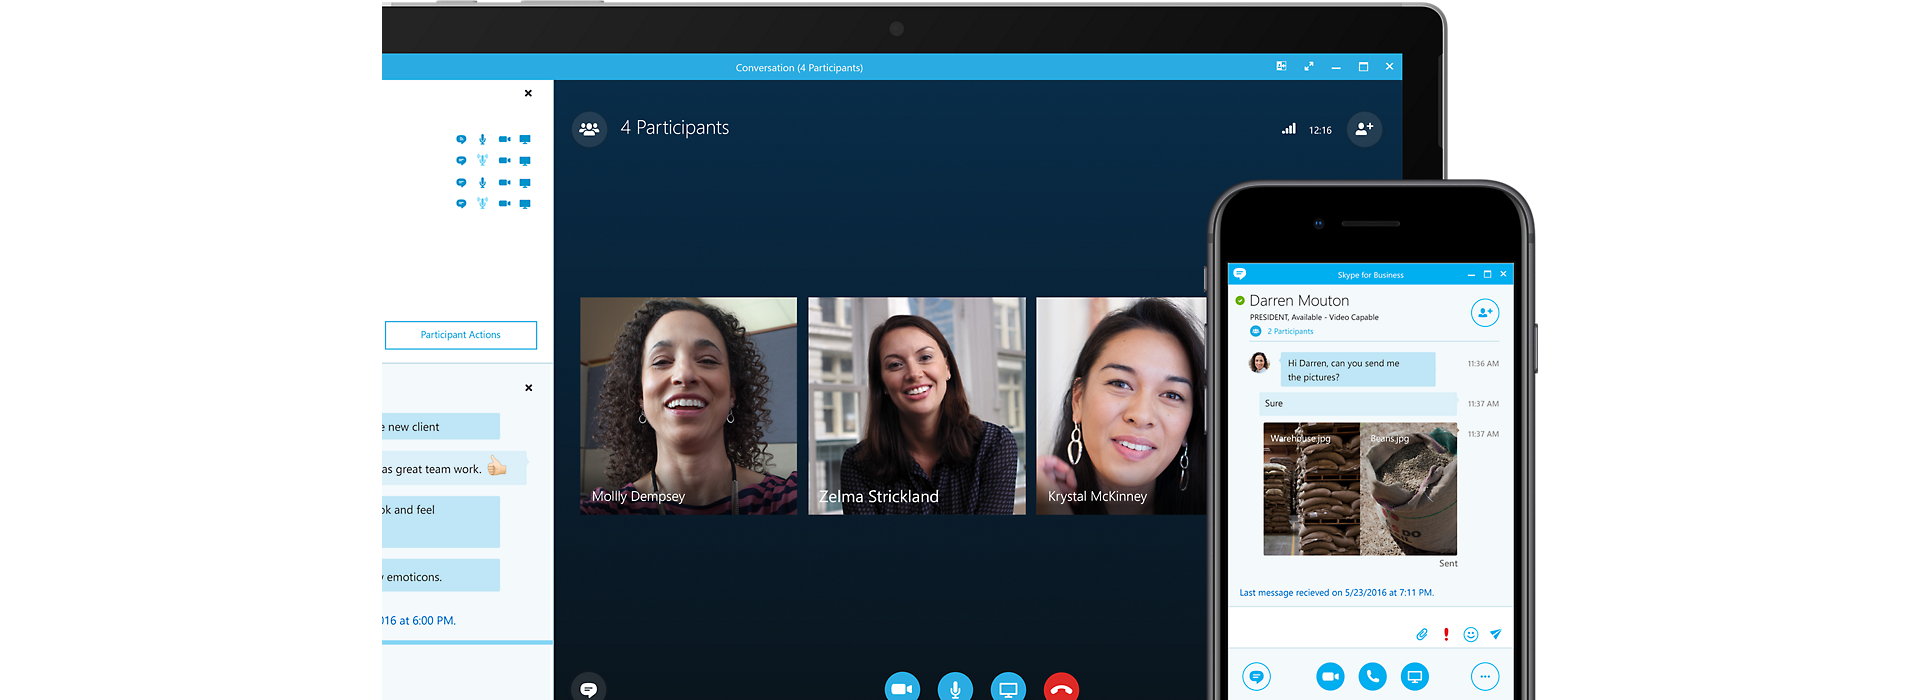 Preklopljeni zaslon uređaja sa sastankom aplikacije Skype za tvrtke online pokraj zaslona mobilnog uređaja povezanog s istim sastankom